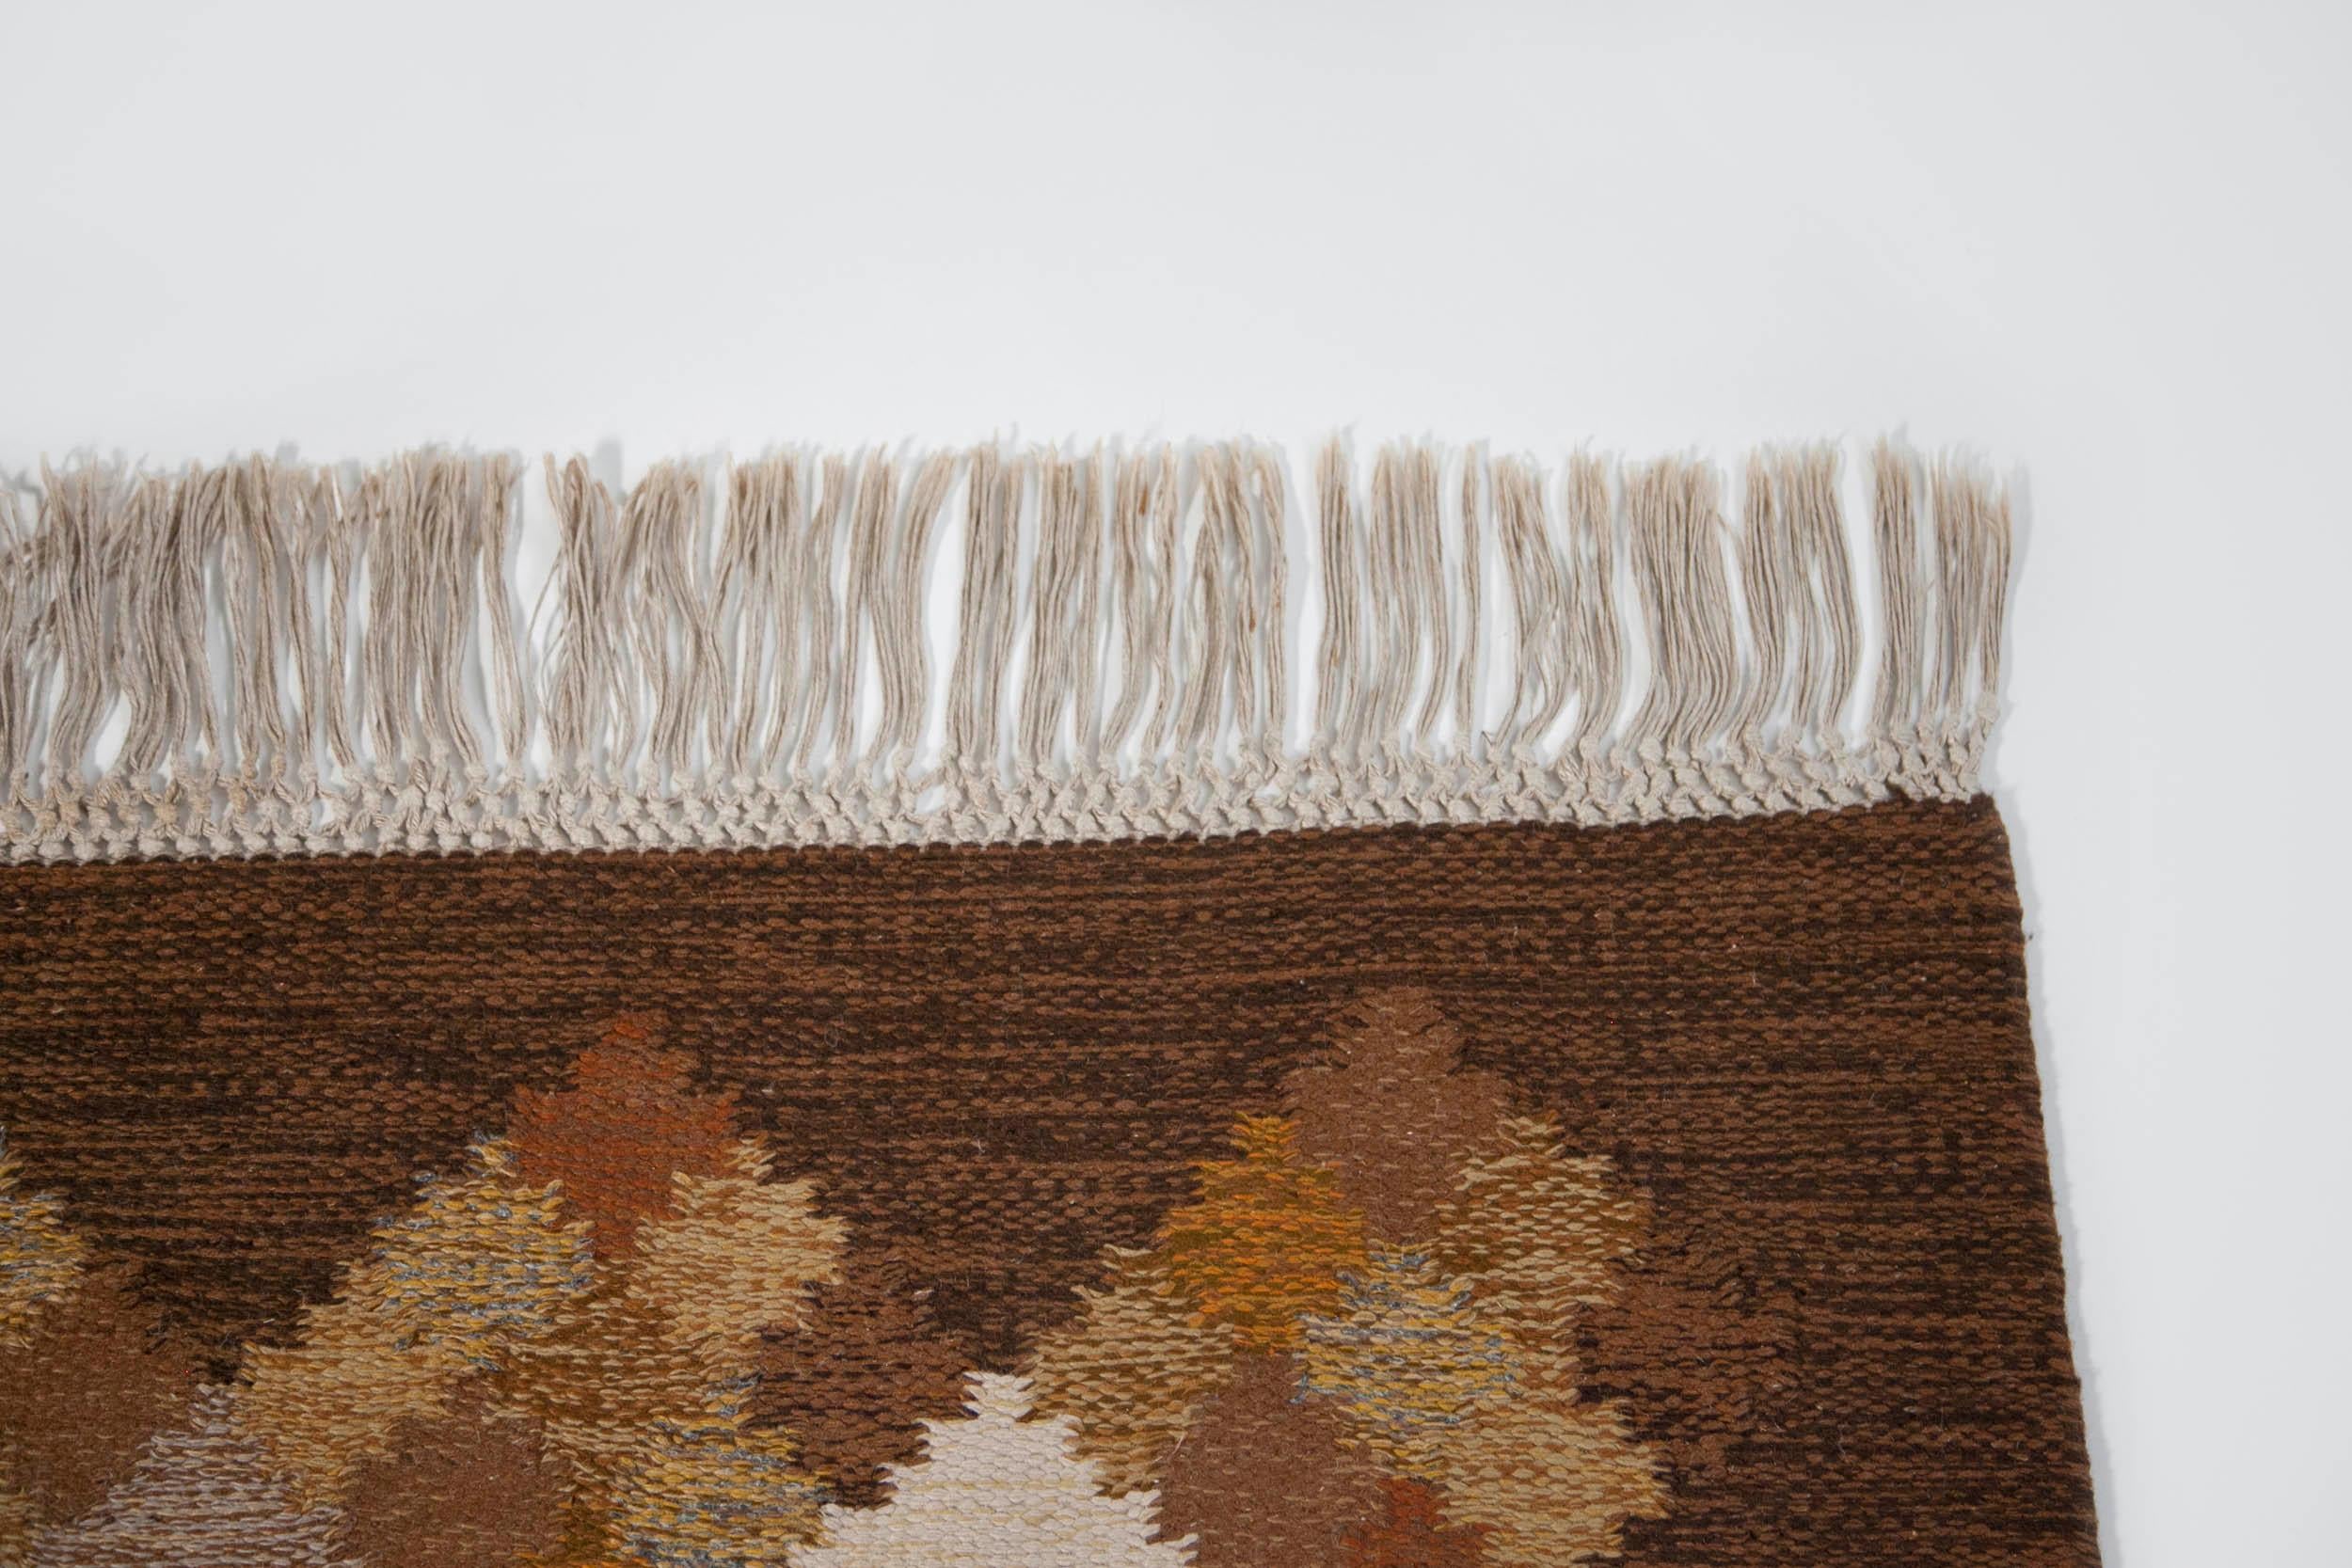 Brita Svefors Brown and Tan Flat-Weave Rug 